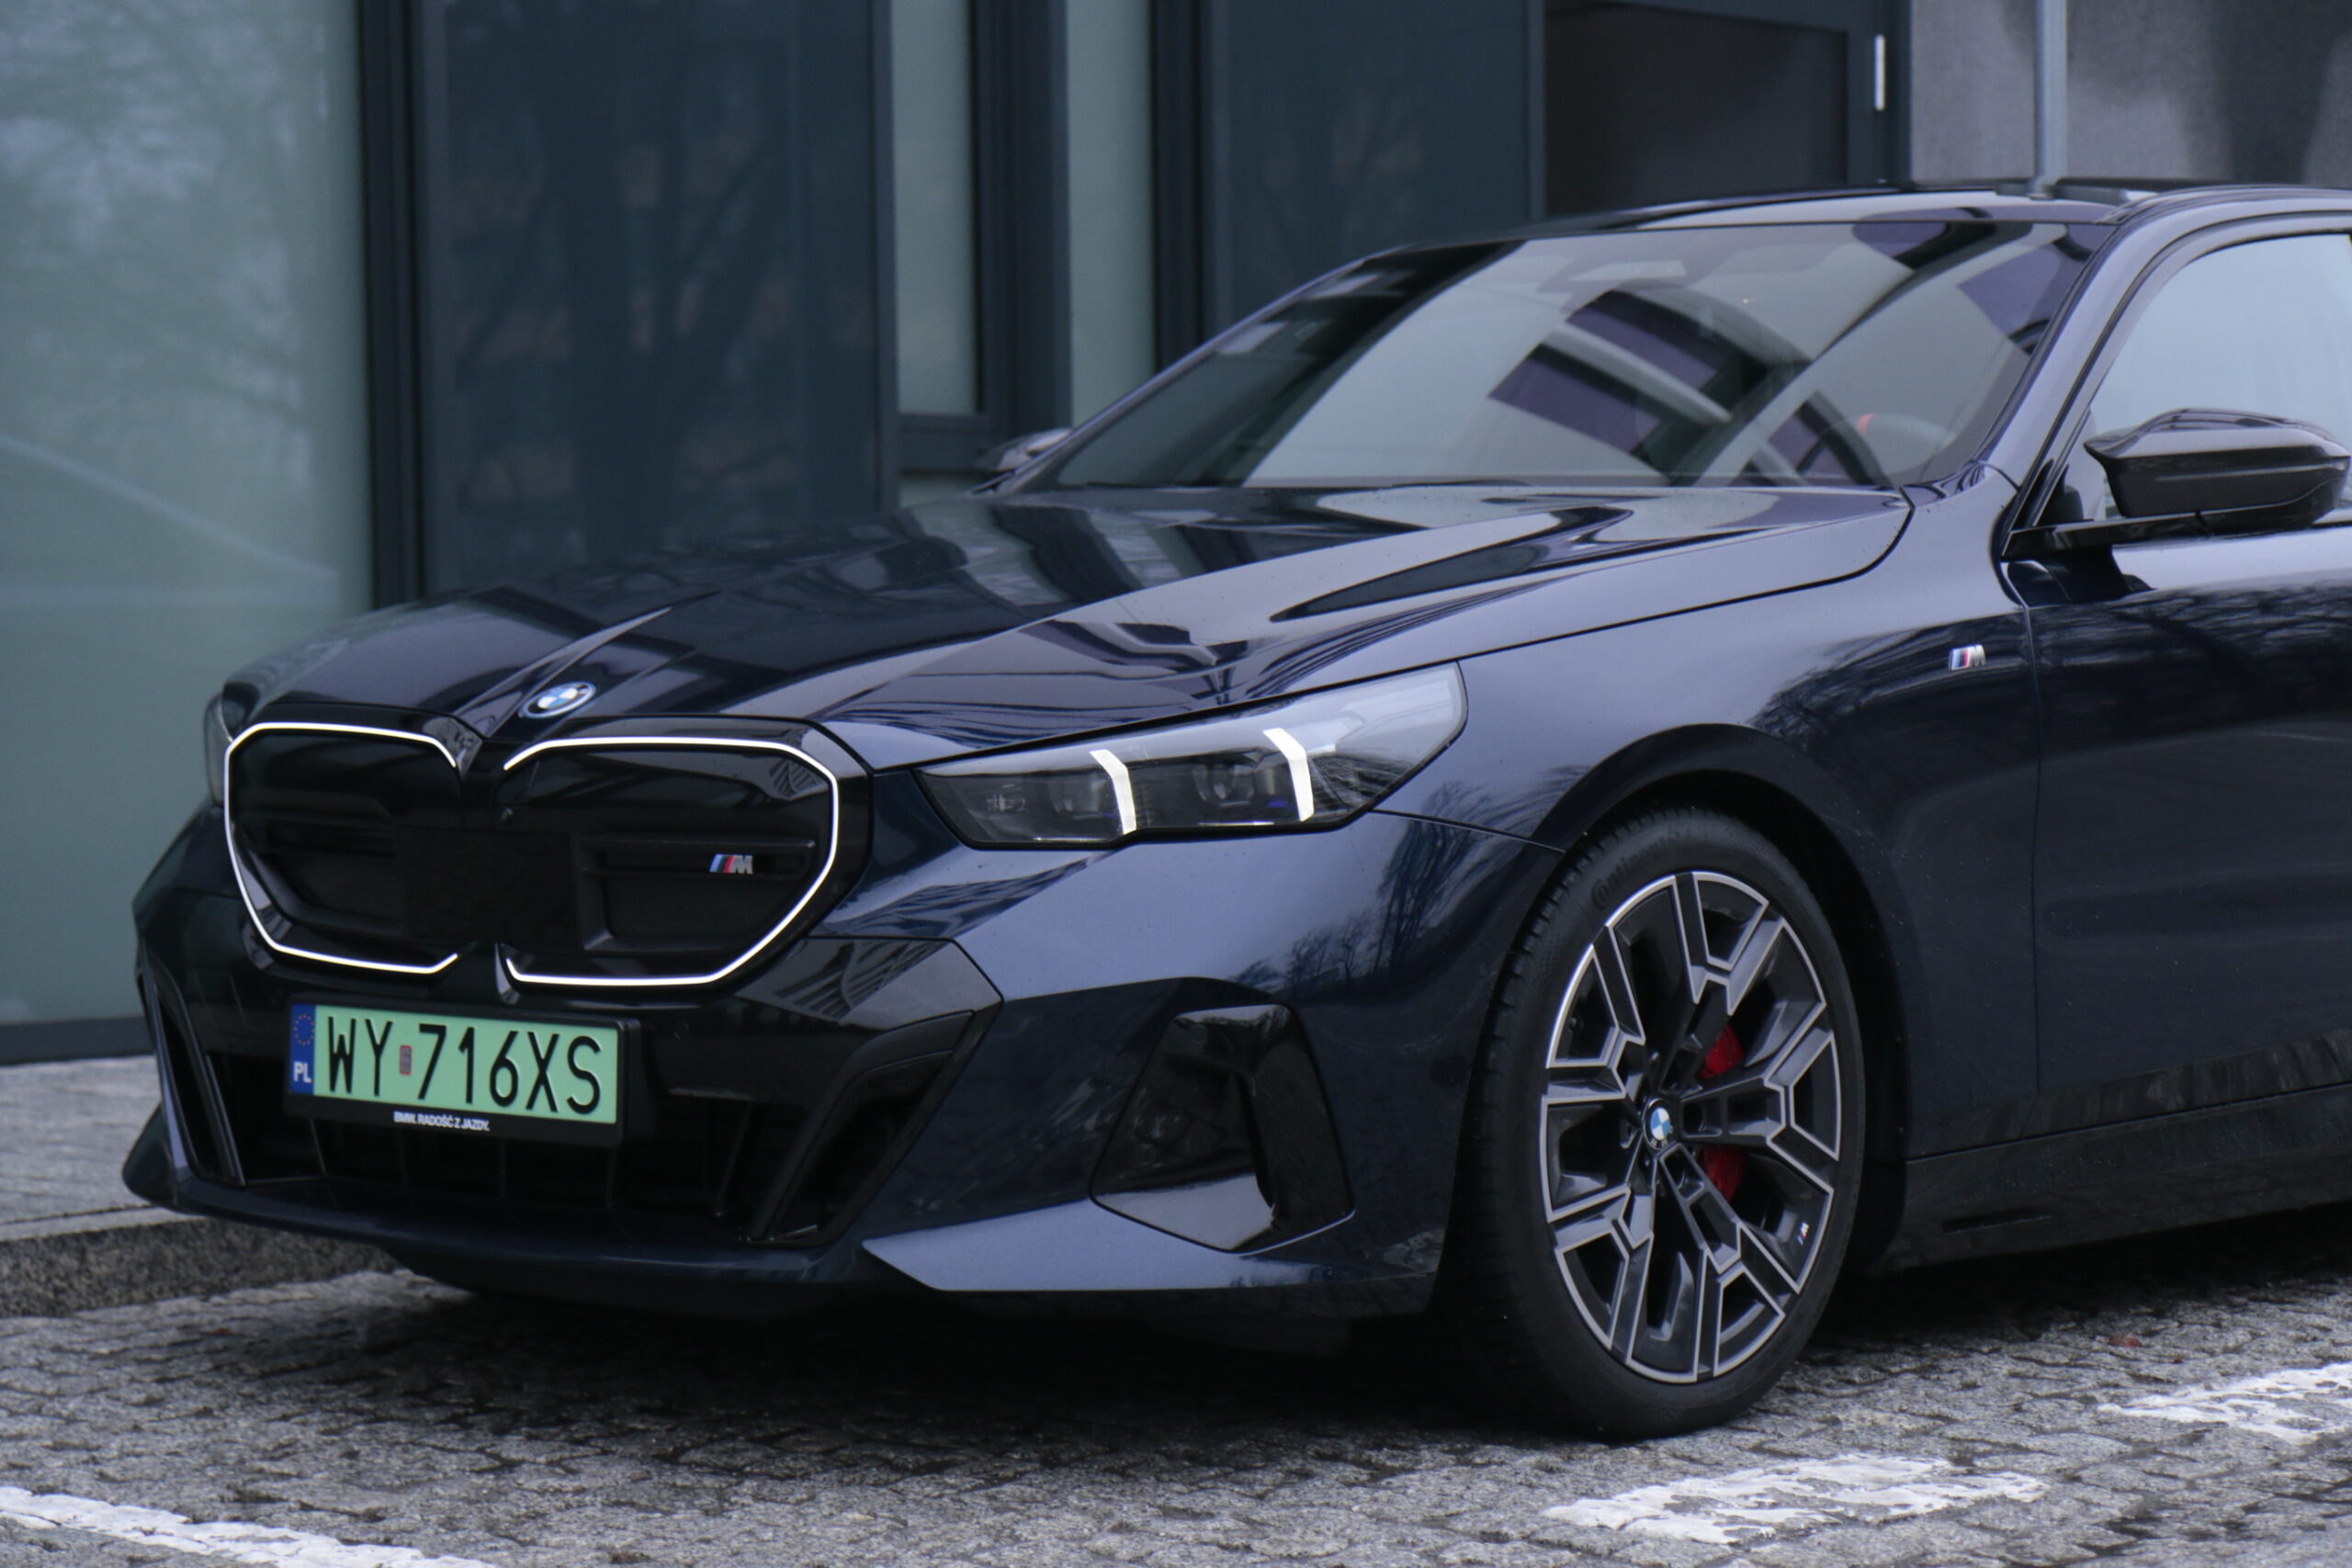 Czarny samochód BMW serii M zaparkowany na ulicy, z widocznym przednim kołem i częścią maski.